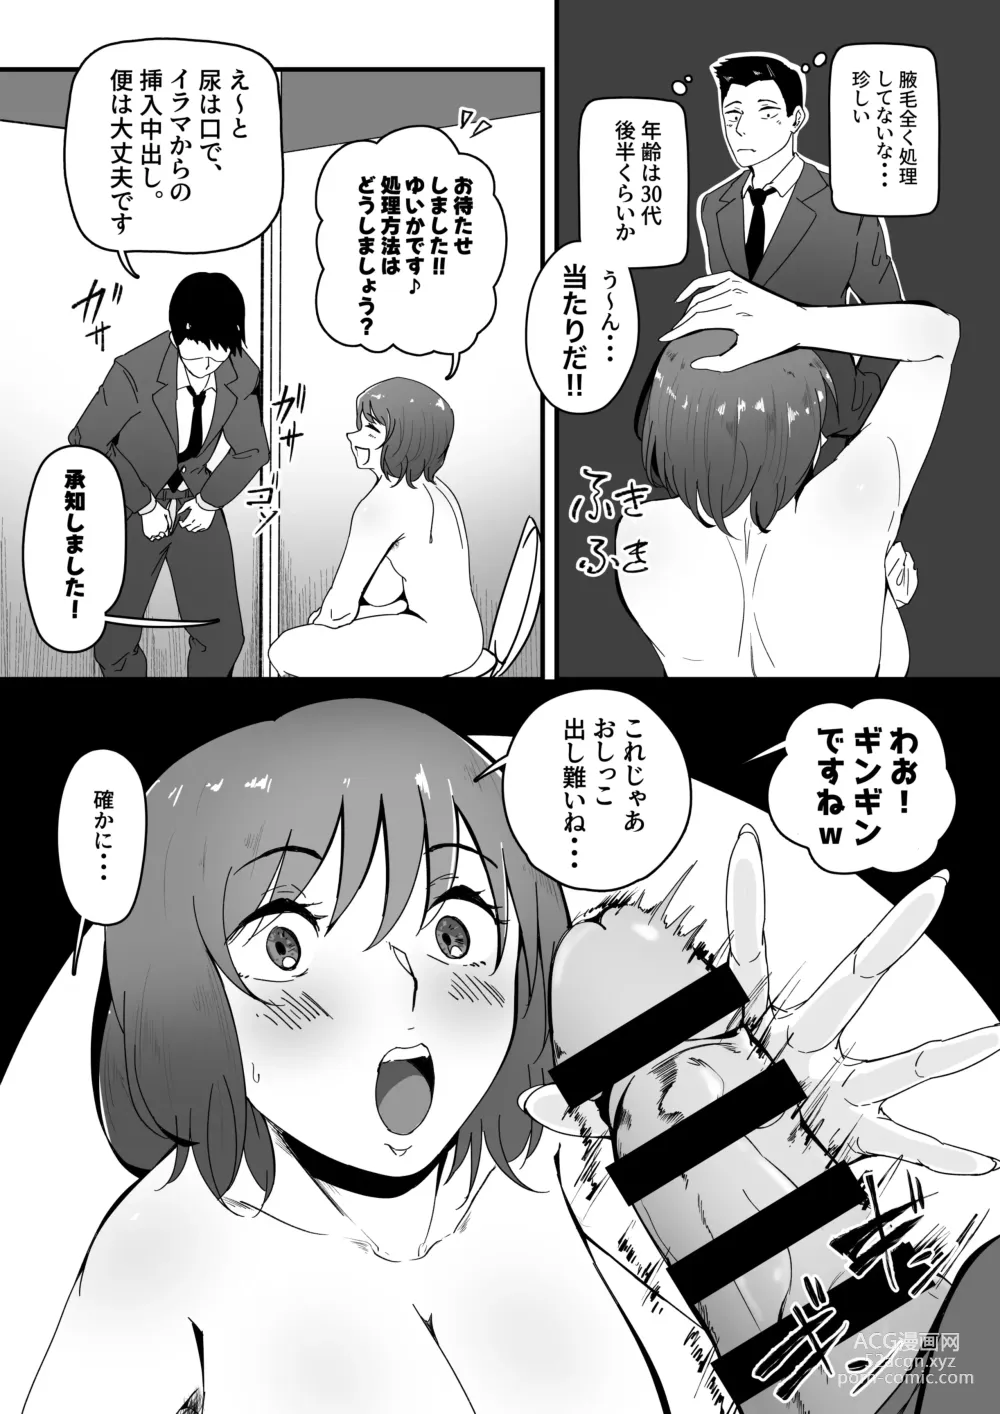 Page 5 of doujinshi Danseiyou Toile wa Itsumo Kondeiru.